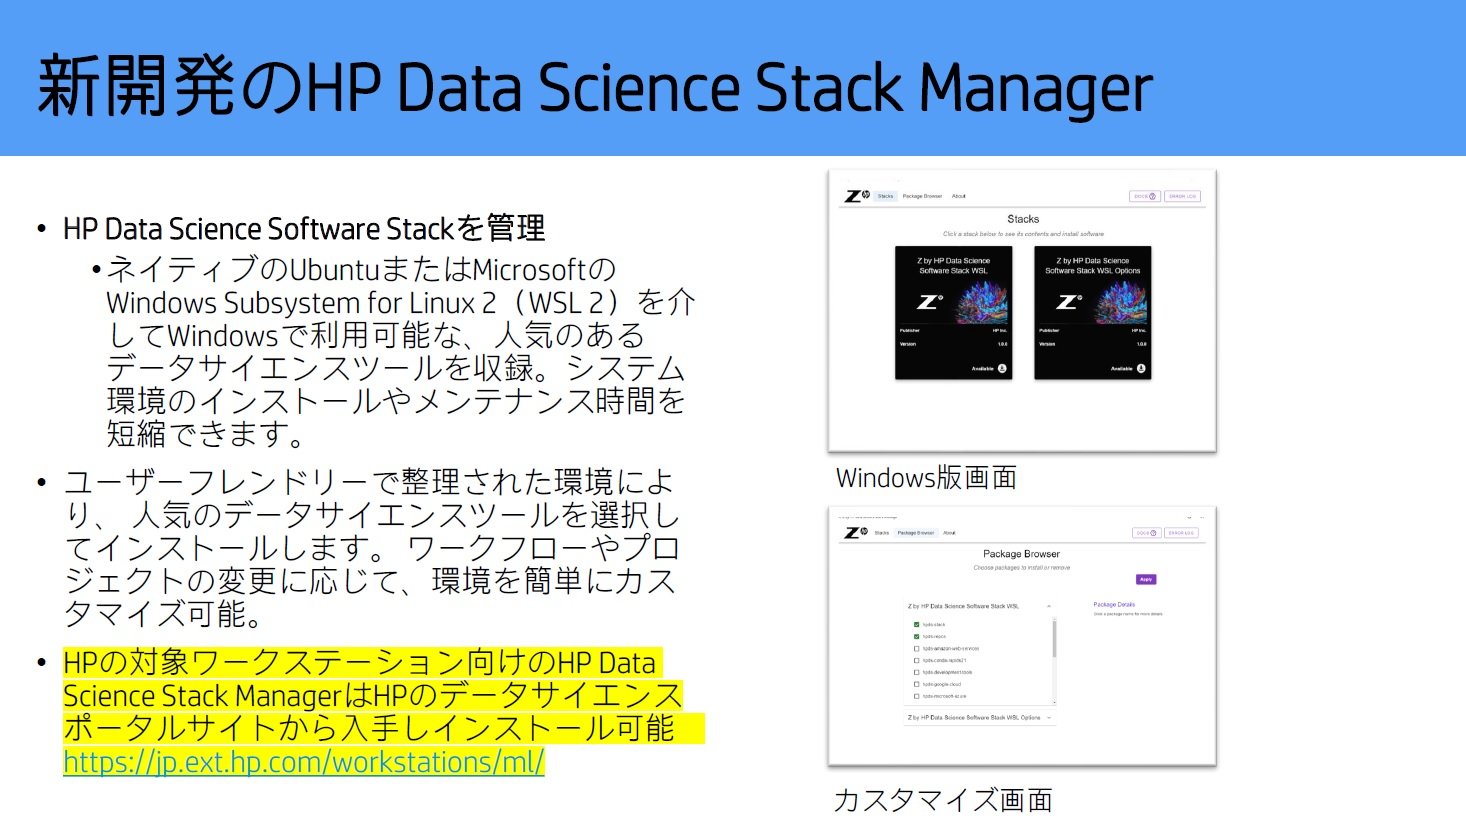 f[^TCGX[NXe[V̊ݒƊǗeՂɂ\[VuZ by HP Data Science Stack ManagervmNbNŊgn oF{HP